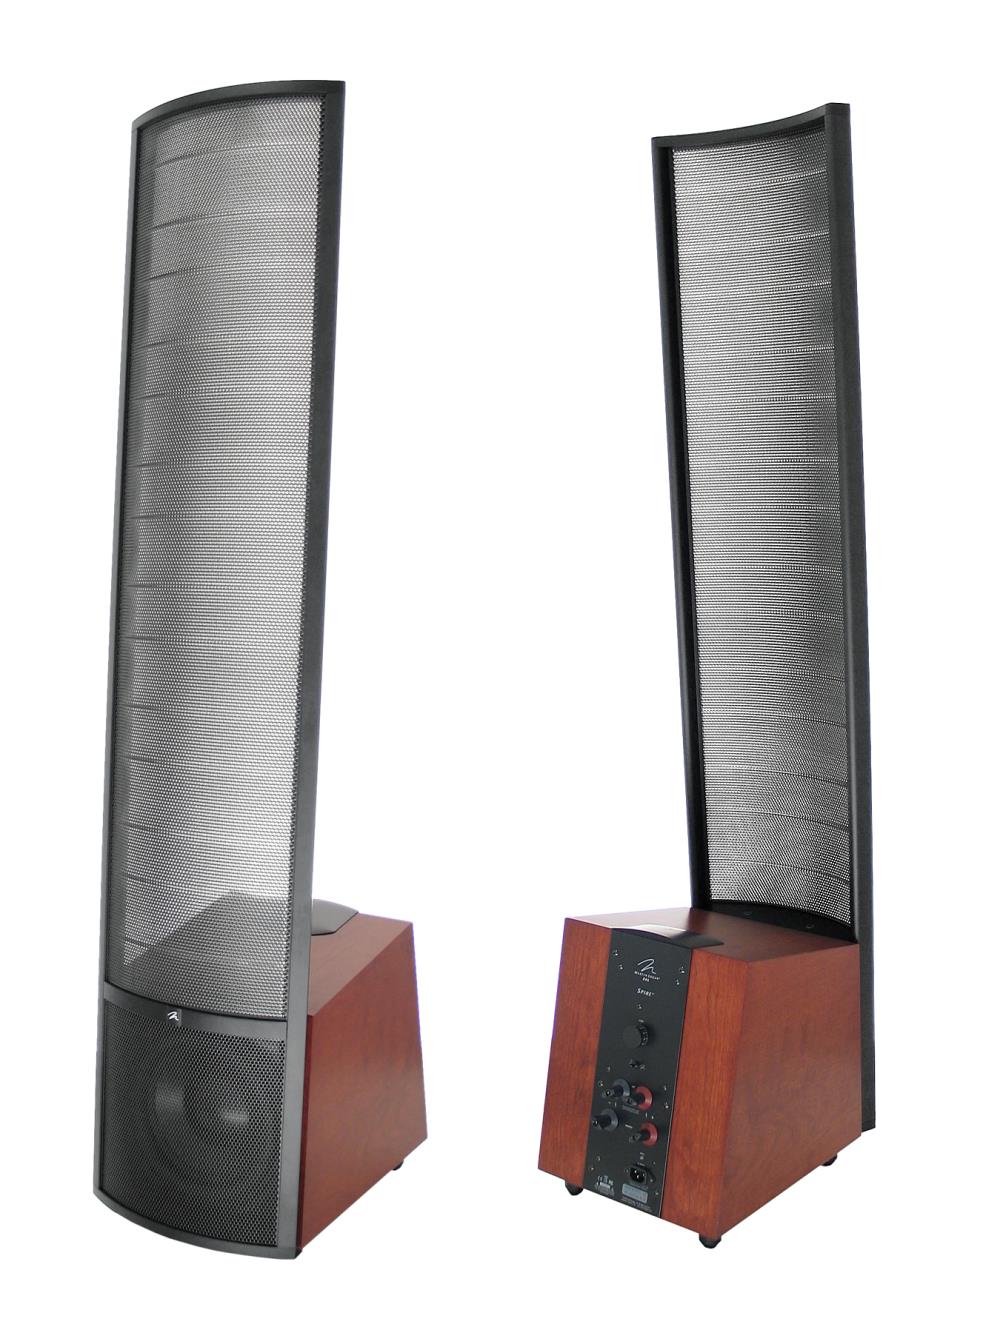 Recopilación, PANTALLAS de sonido Martin-logan-spire-speakers-front-main-large